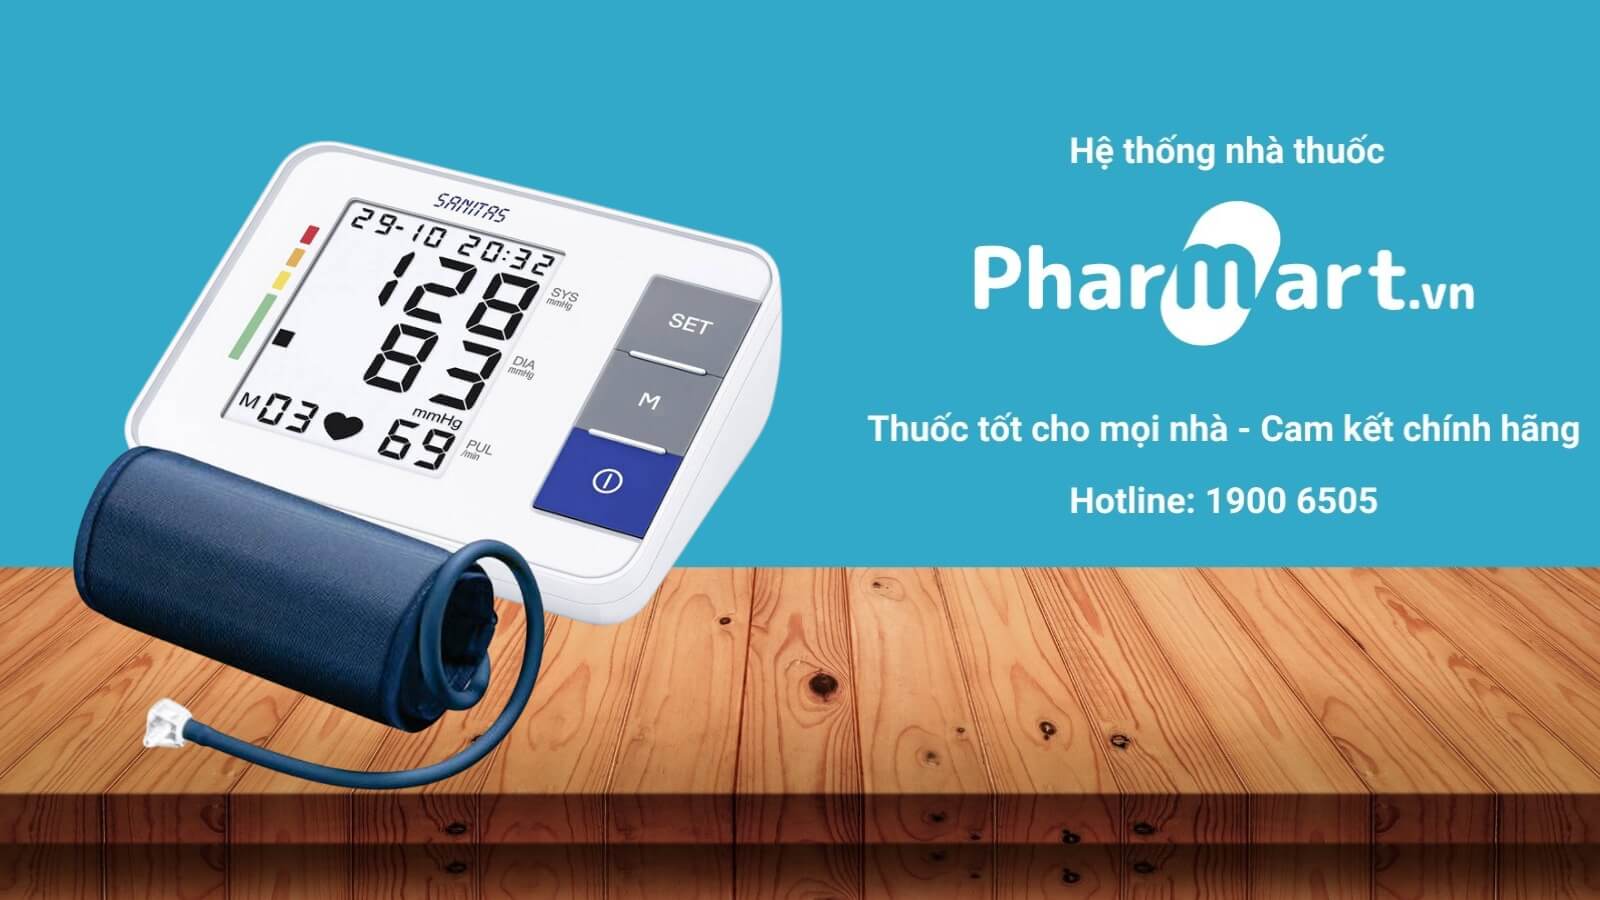 Máy đo huyết áp Sanitas SBM38 được phân phối chính hãng tại Pharmart.vn